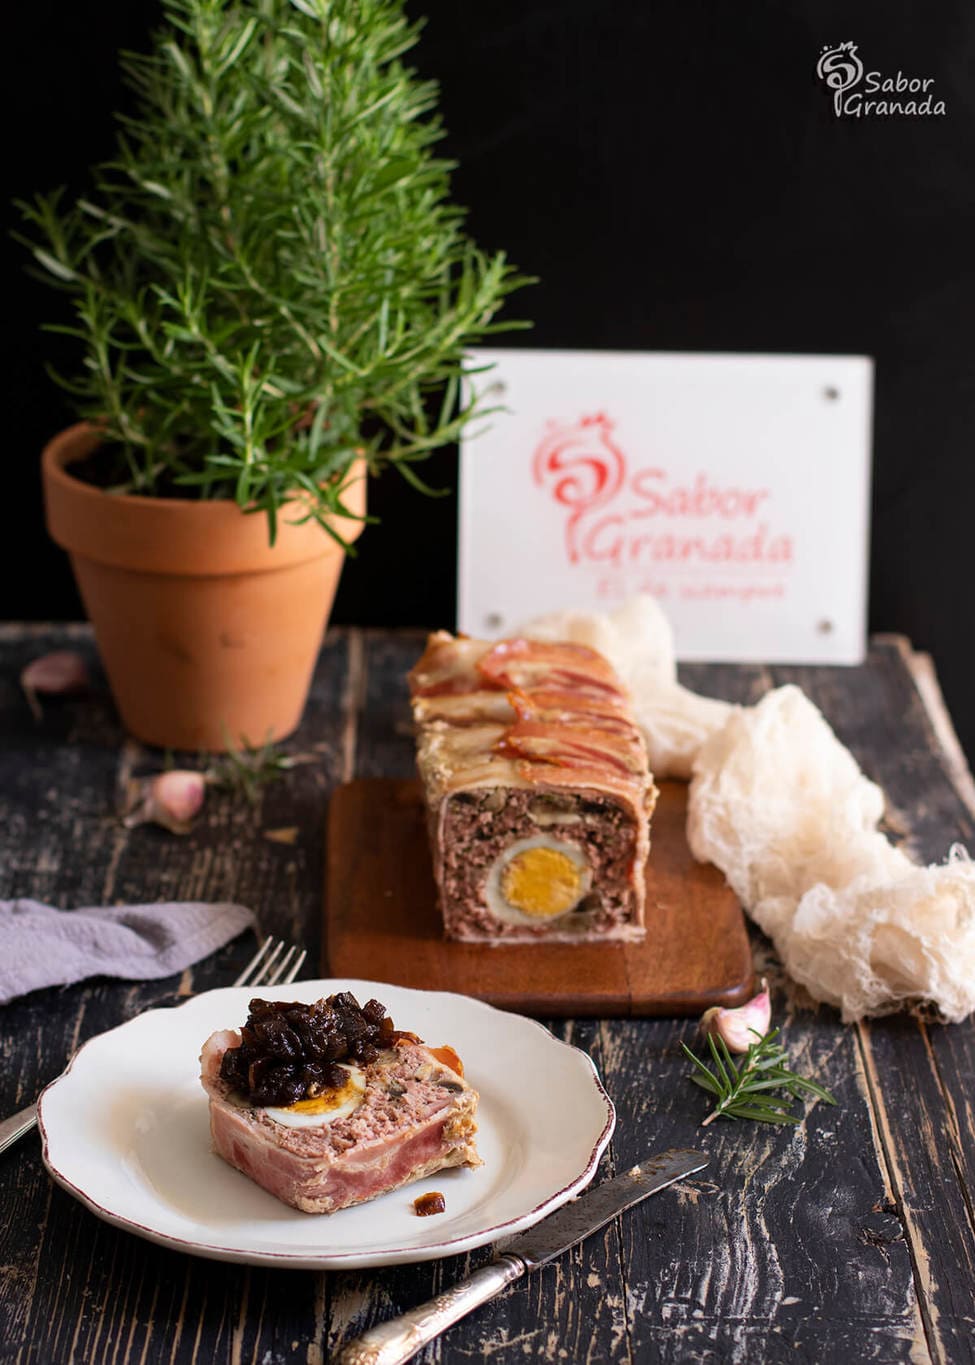 Receta de pastel de carne recién elaborado - Sabor Granada